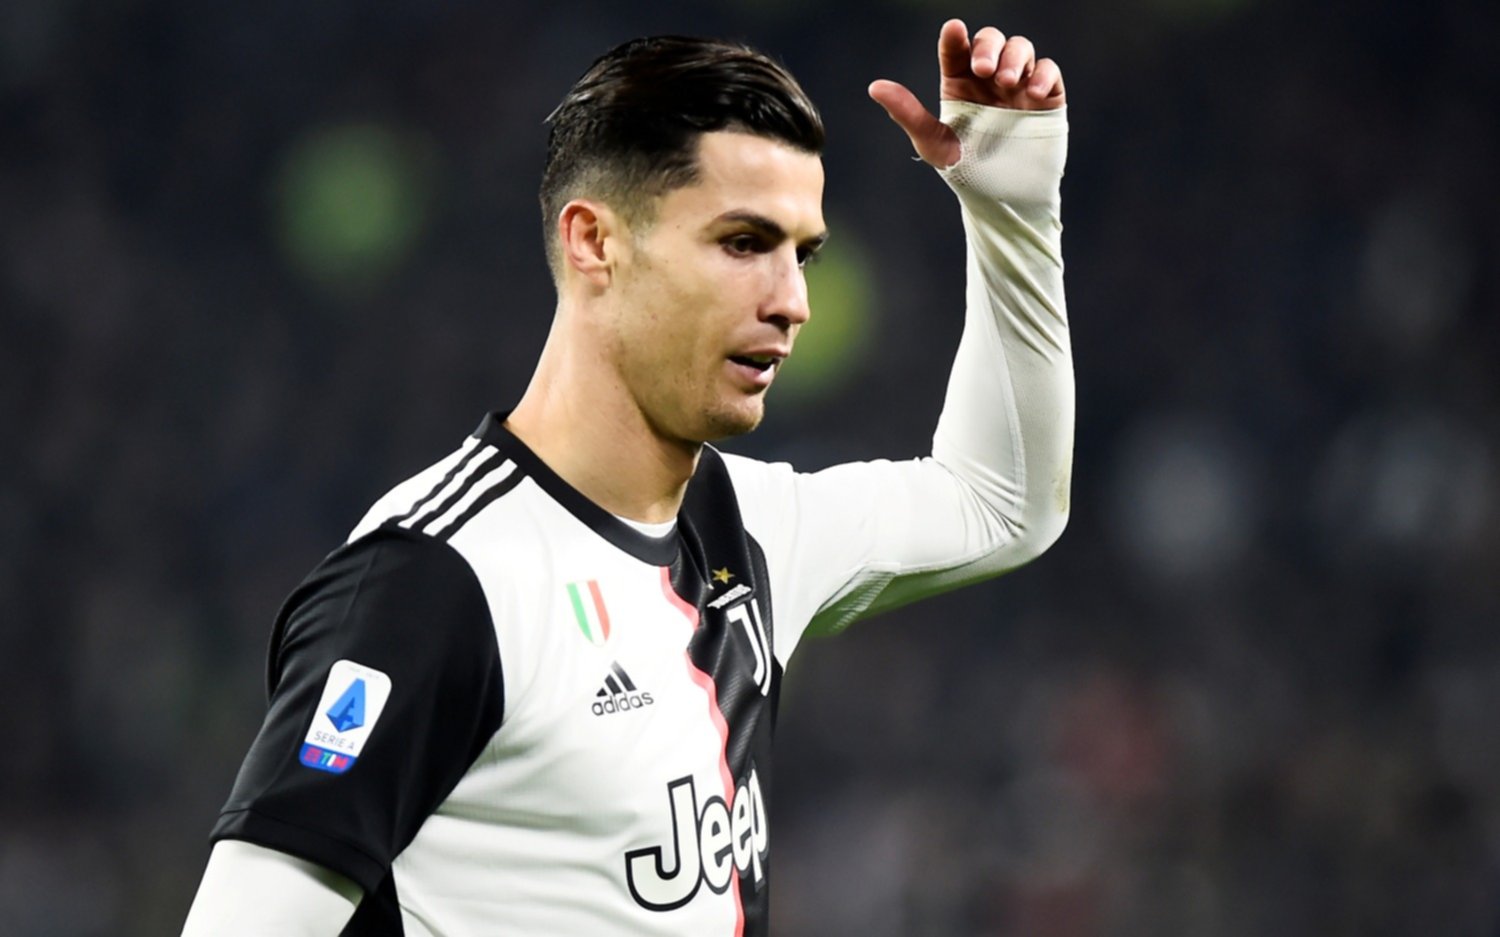 El futuro incierto que afronta Cristiano Ronaldo en su carrera